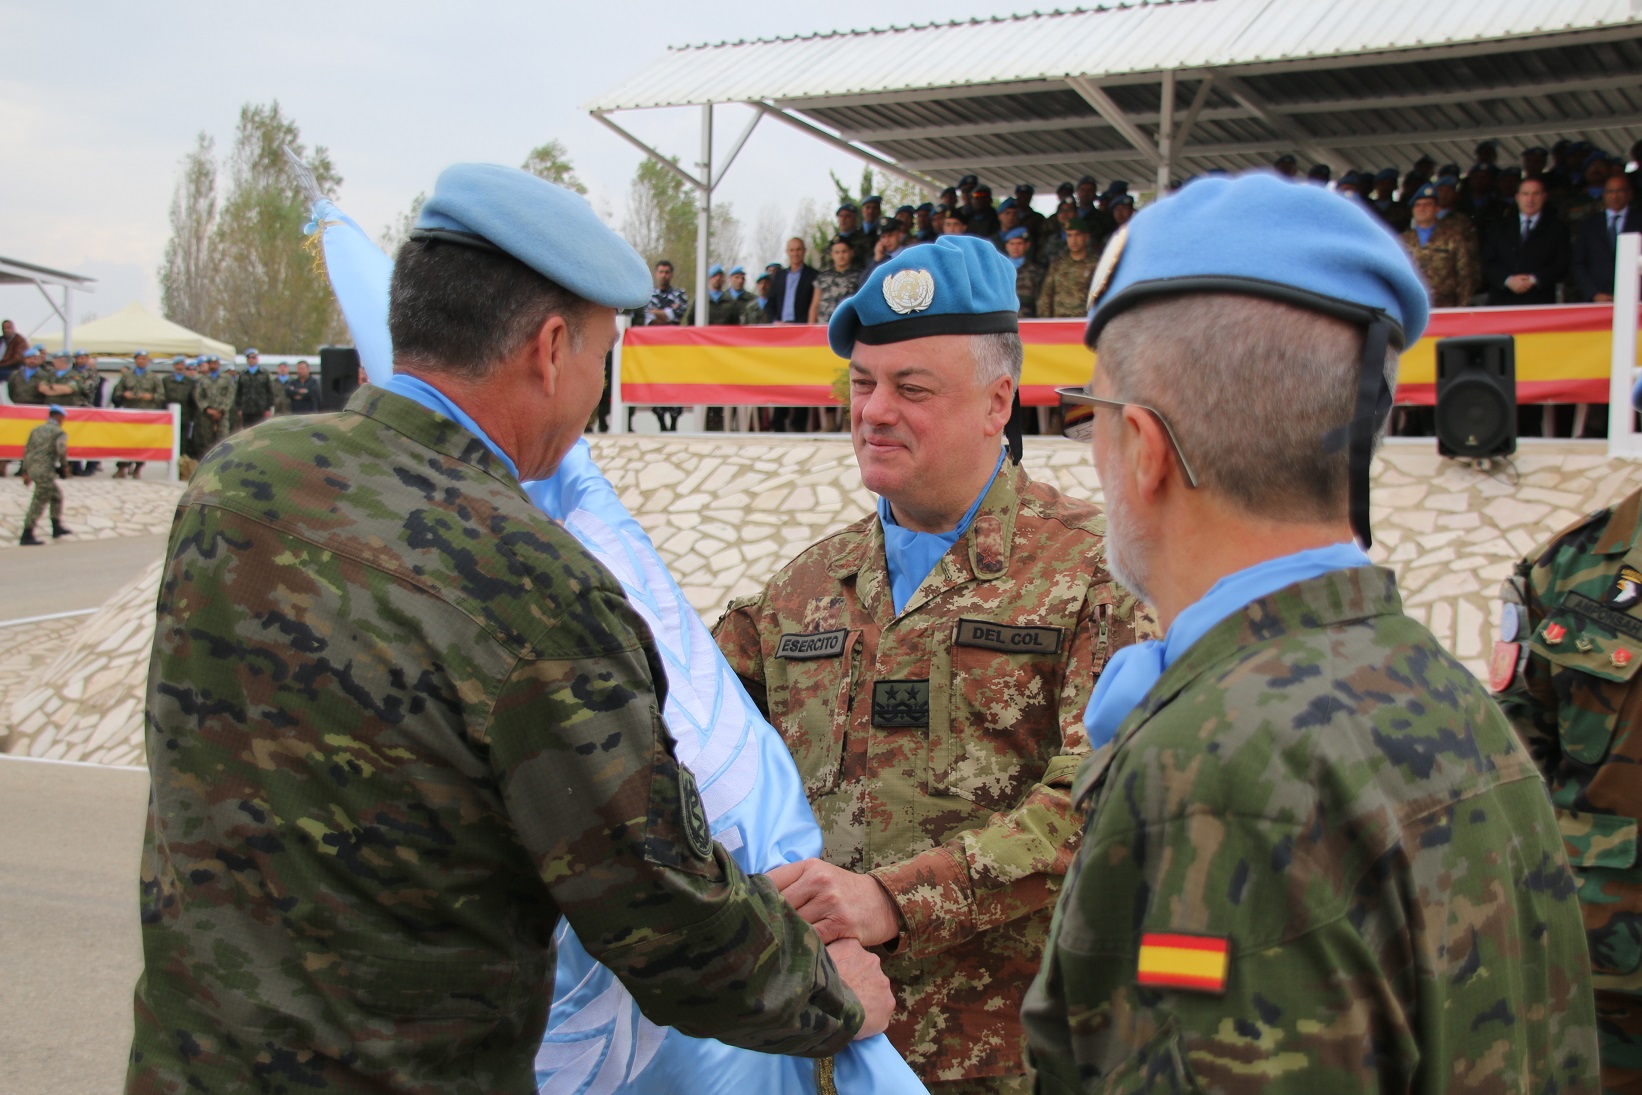 Los militares españoles de la Brigada en Líbano XXIX regresan con la misión cumplida